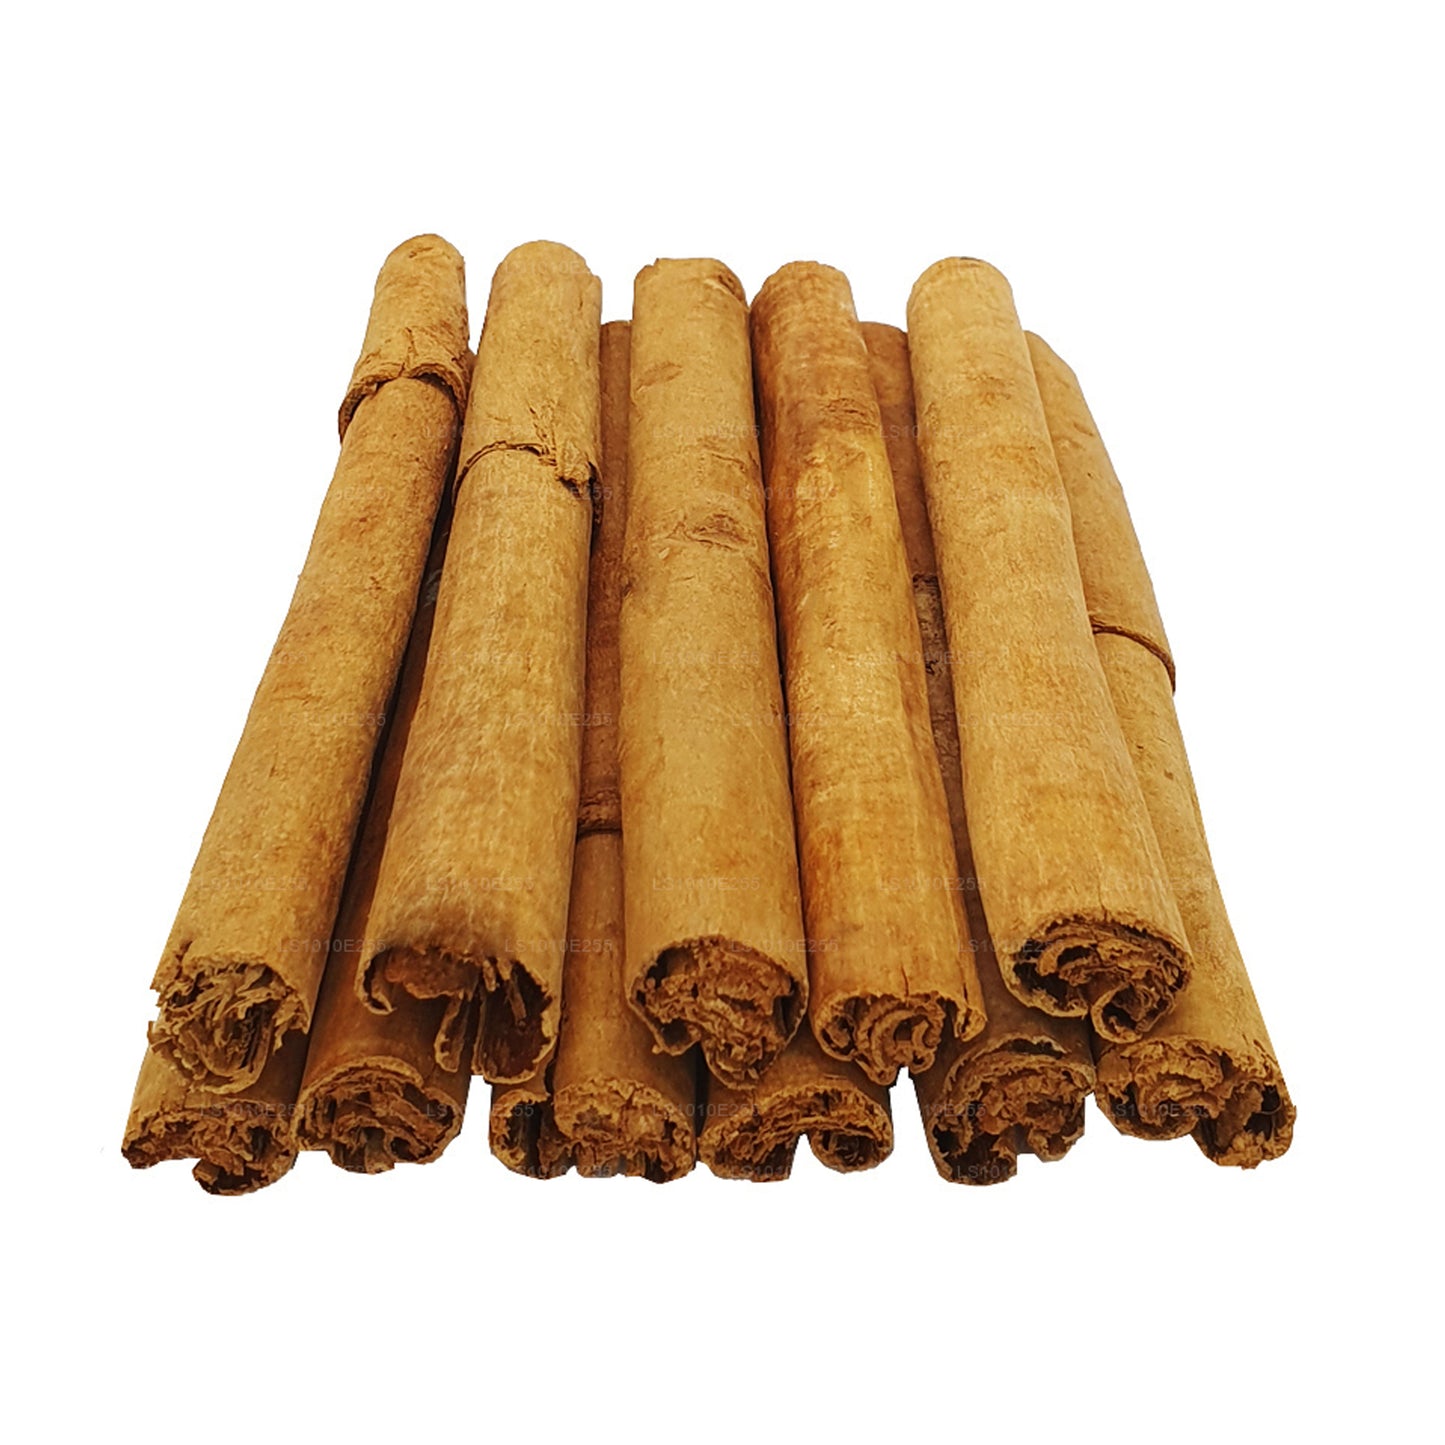 Lakpura "M5 Special" Grade Ceylon True Cinnamon Barks Pack